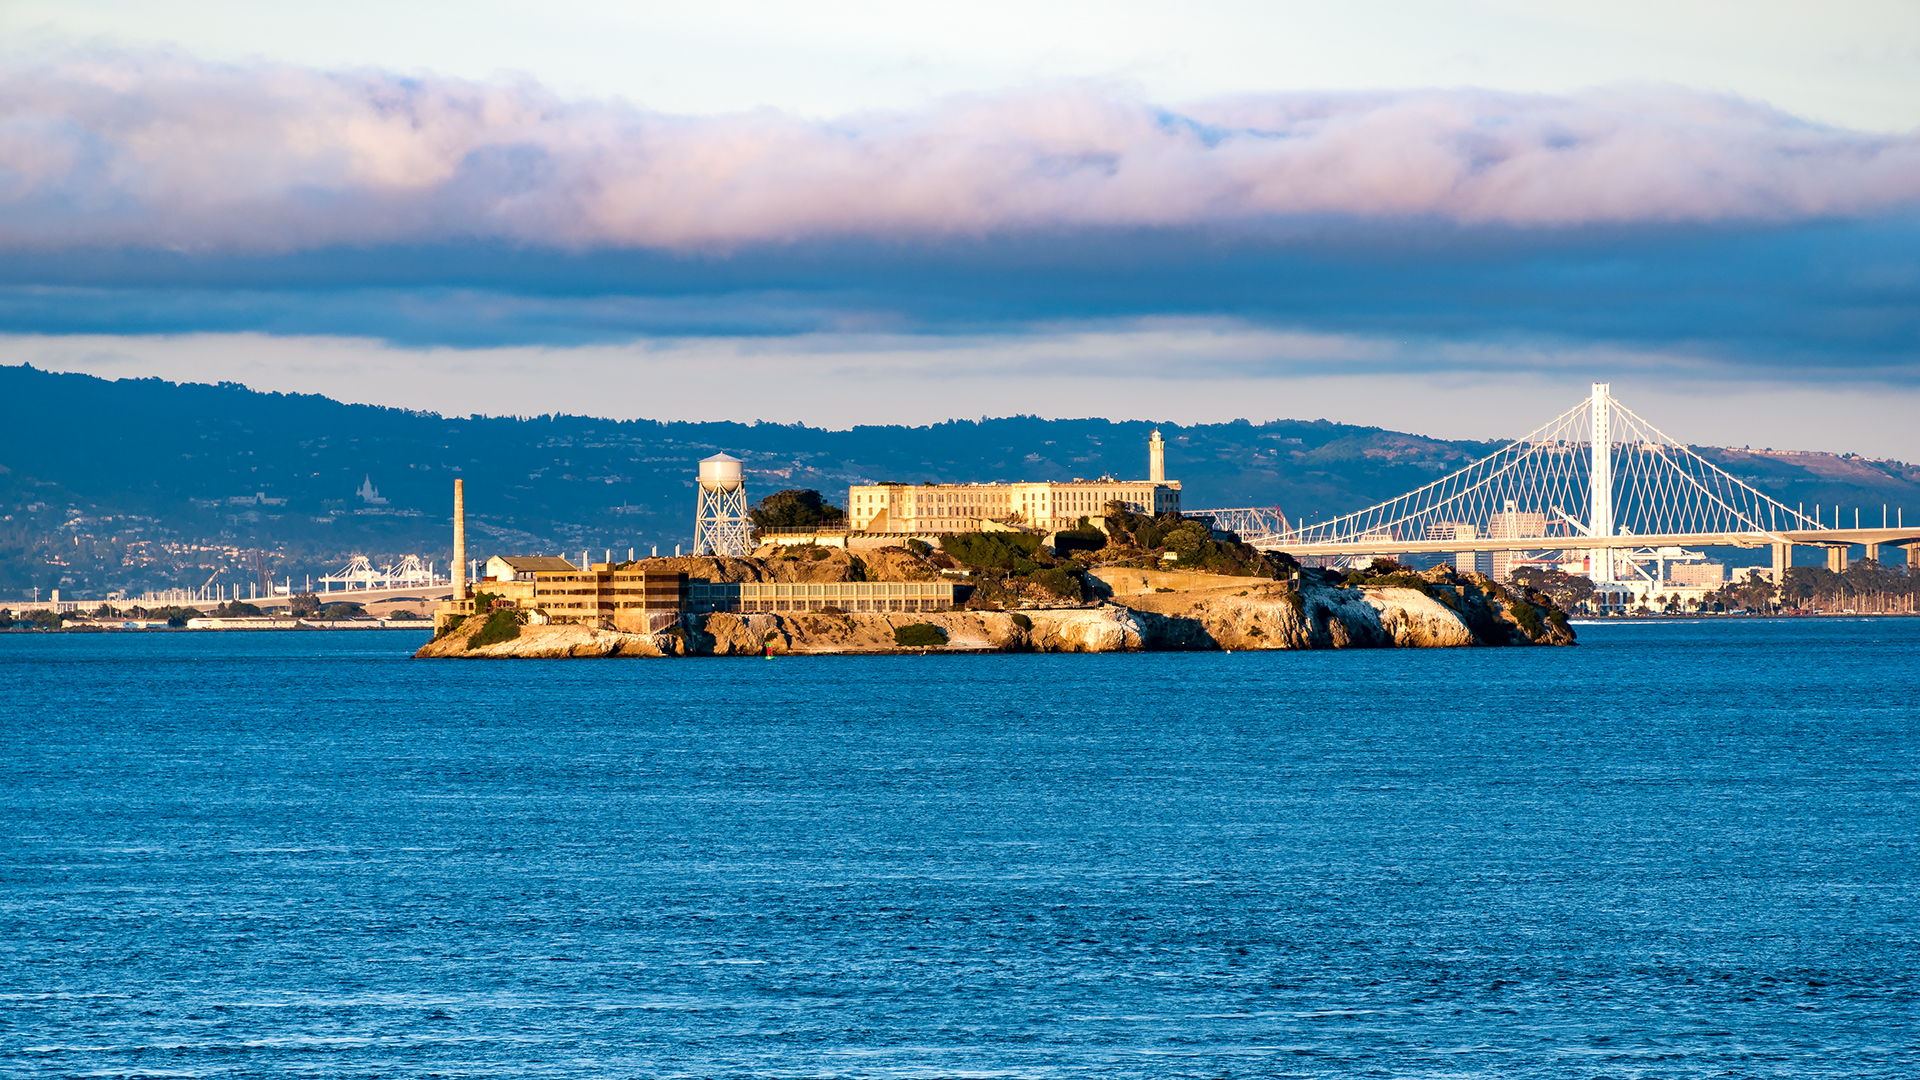 Architecture Bridge Water Sea Island Alcatraz San Francisco USA Monastery Prison Cityscape Clouds Ro 1920x1080